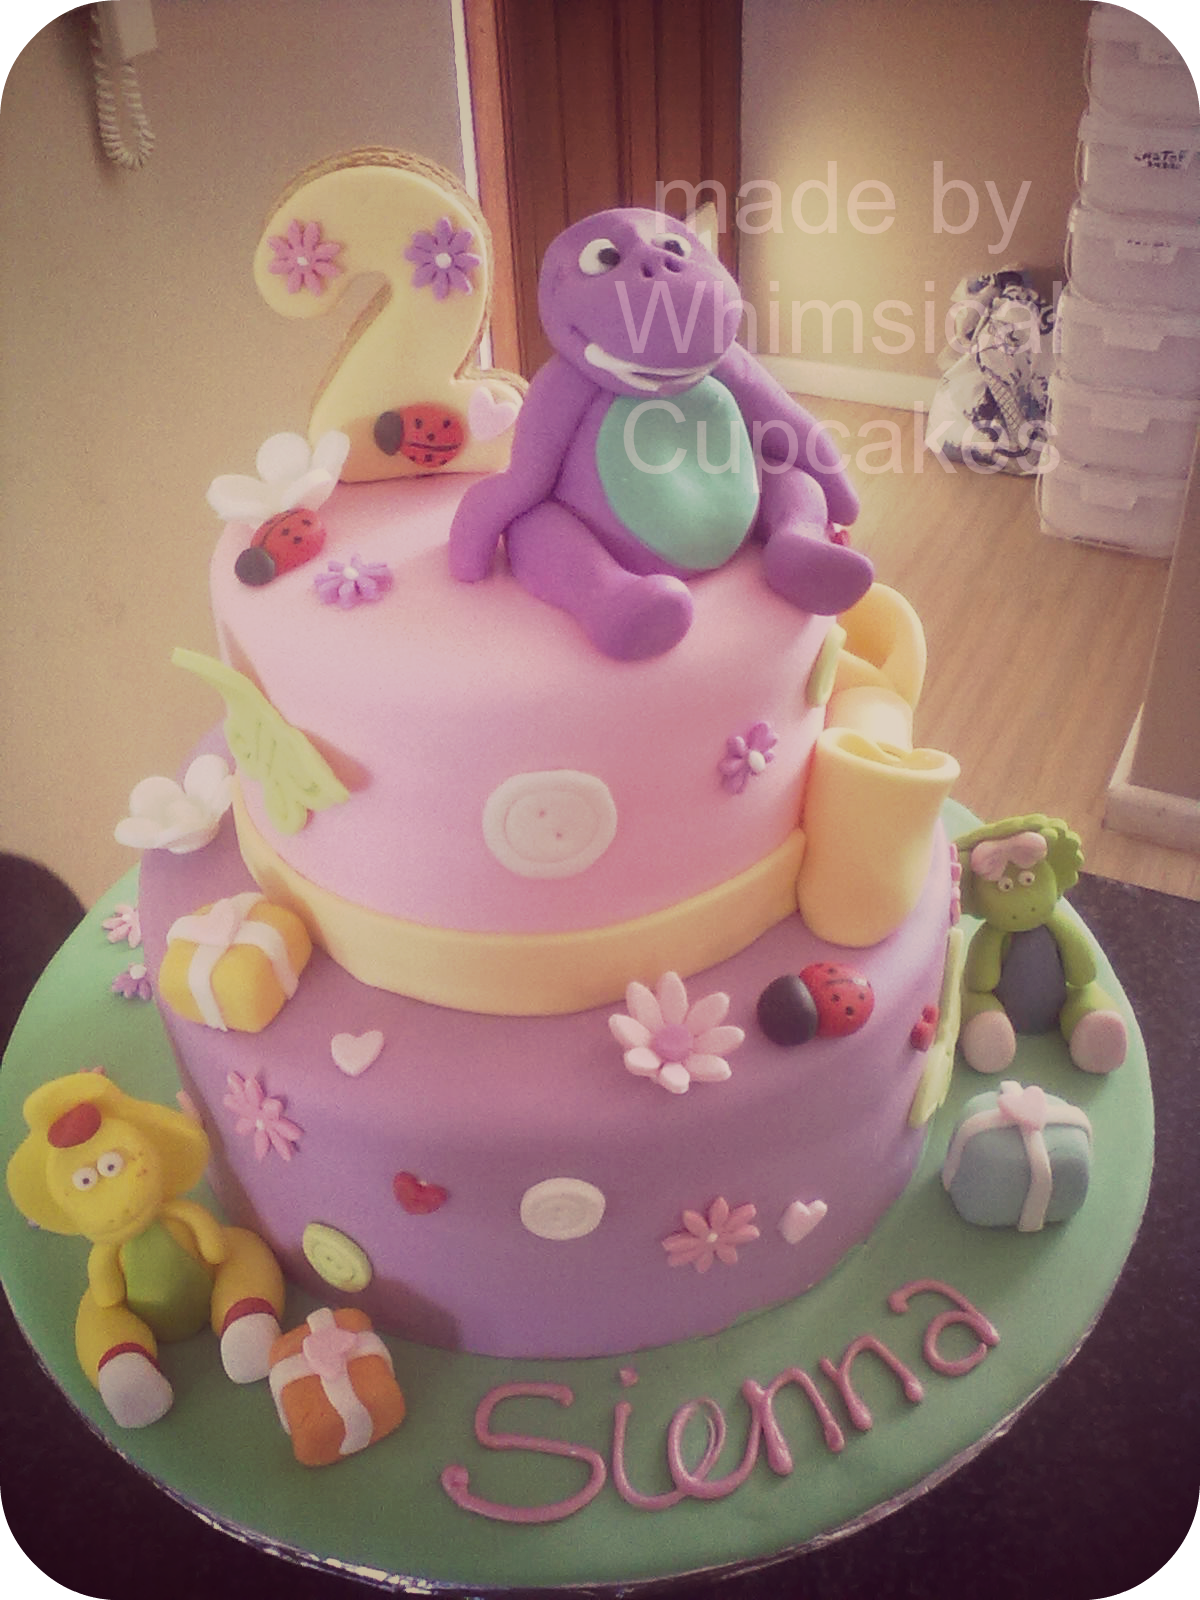 Whimsical Barney themed Cake